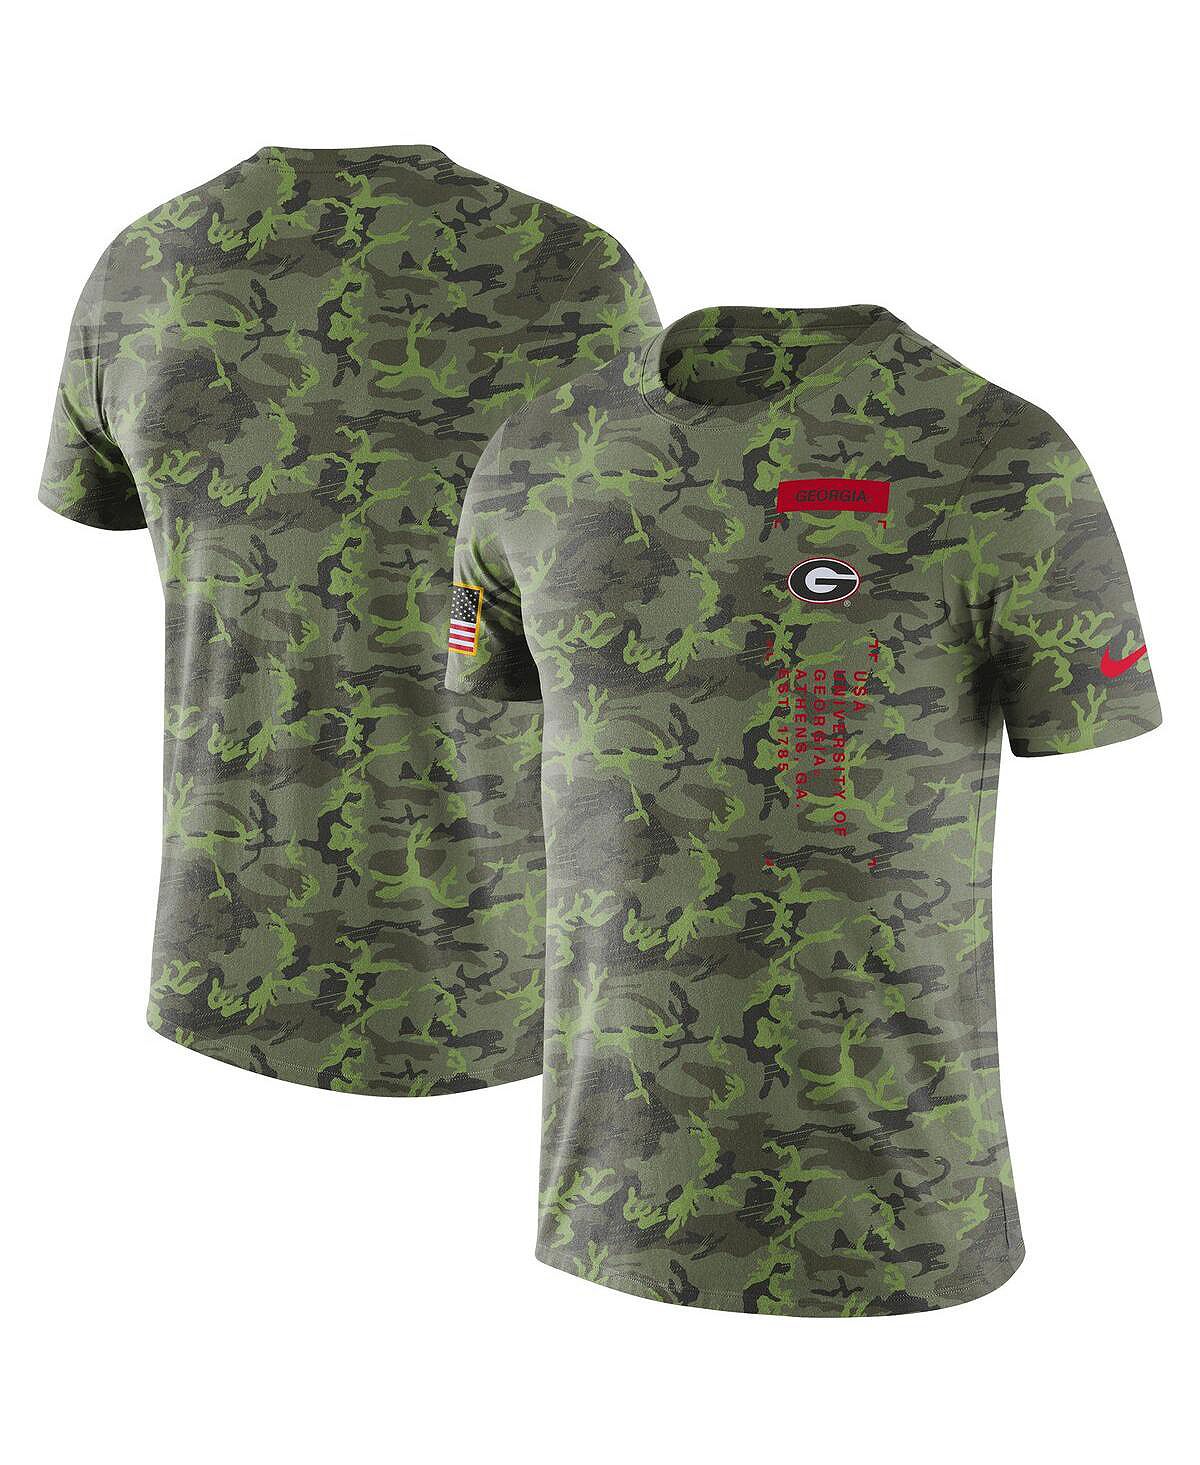 Мужская камуфляжная футболка georgia bulldogs в стиле милитари Nike